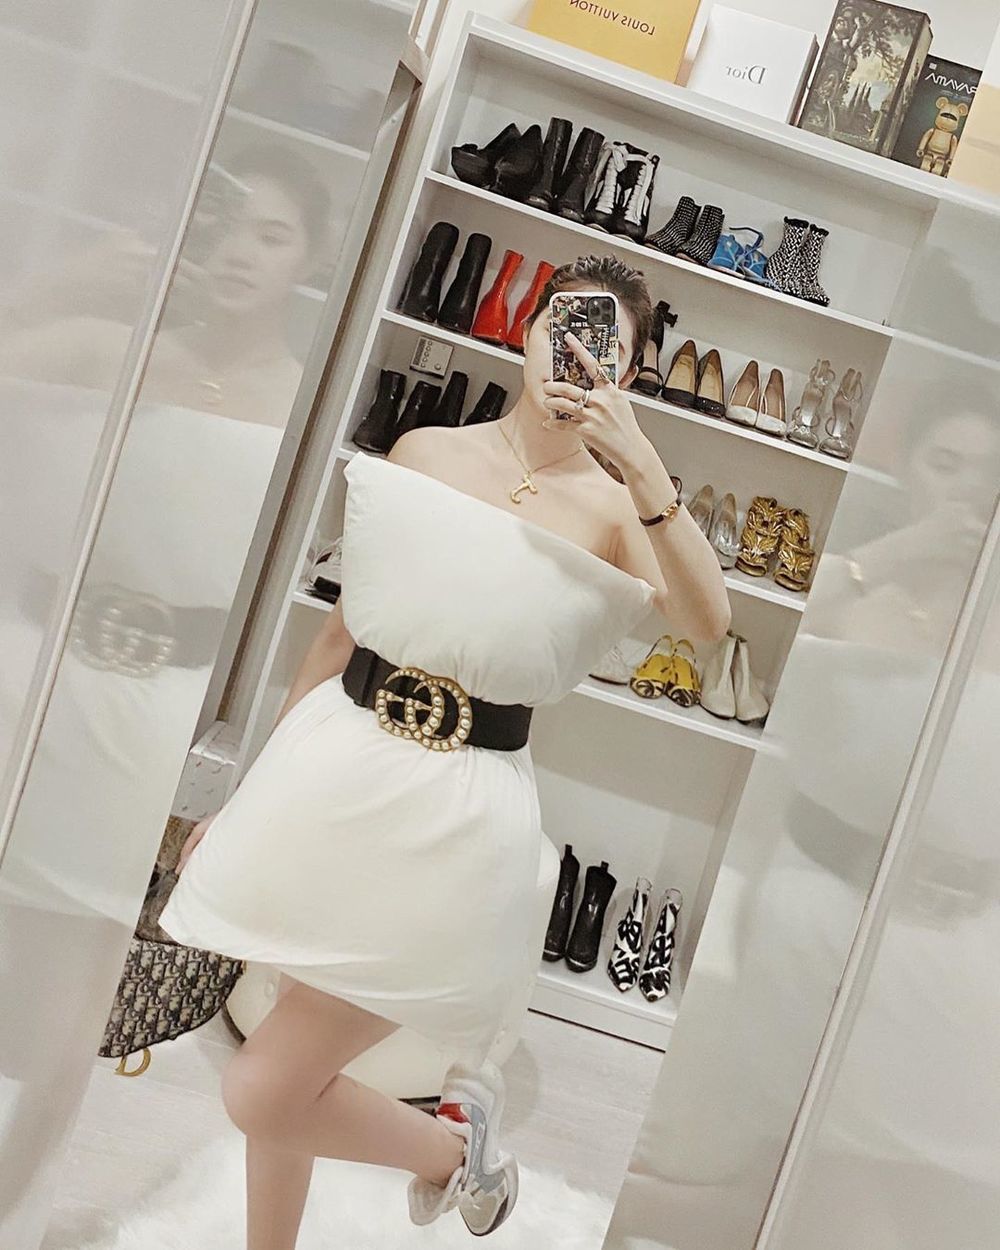  
Jolie Nguyễn đeo thắt lưng Gucci, túi xách Dior yên ngựa và giày LV đình đám. Outfit của cô nàng không dưới 100 triệu. (Ảnh: FBNV)